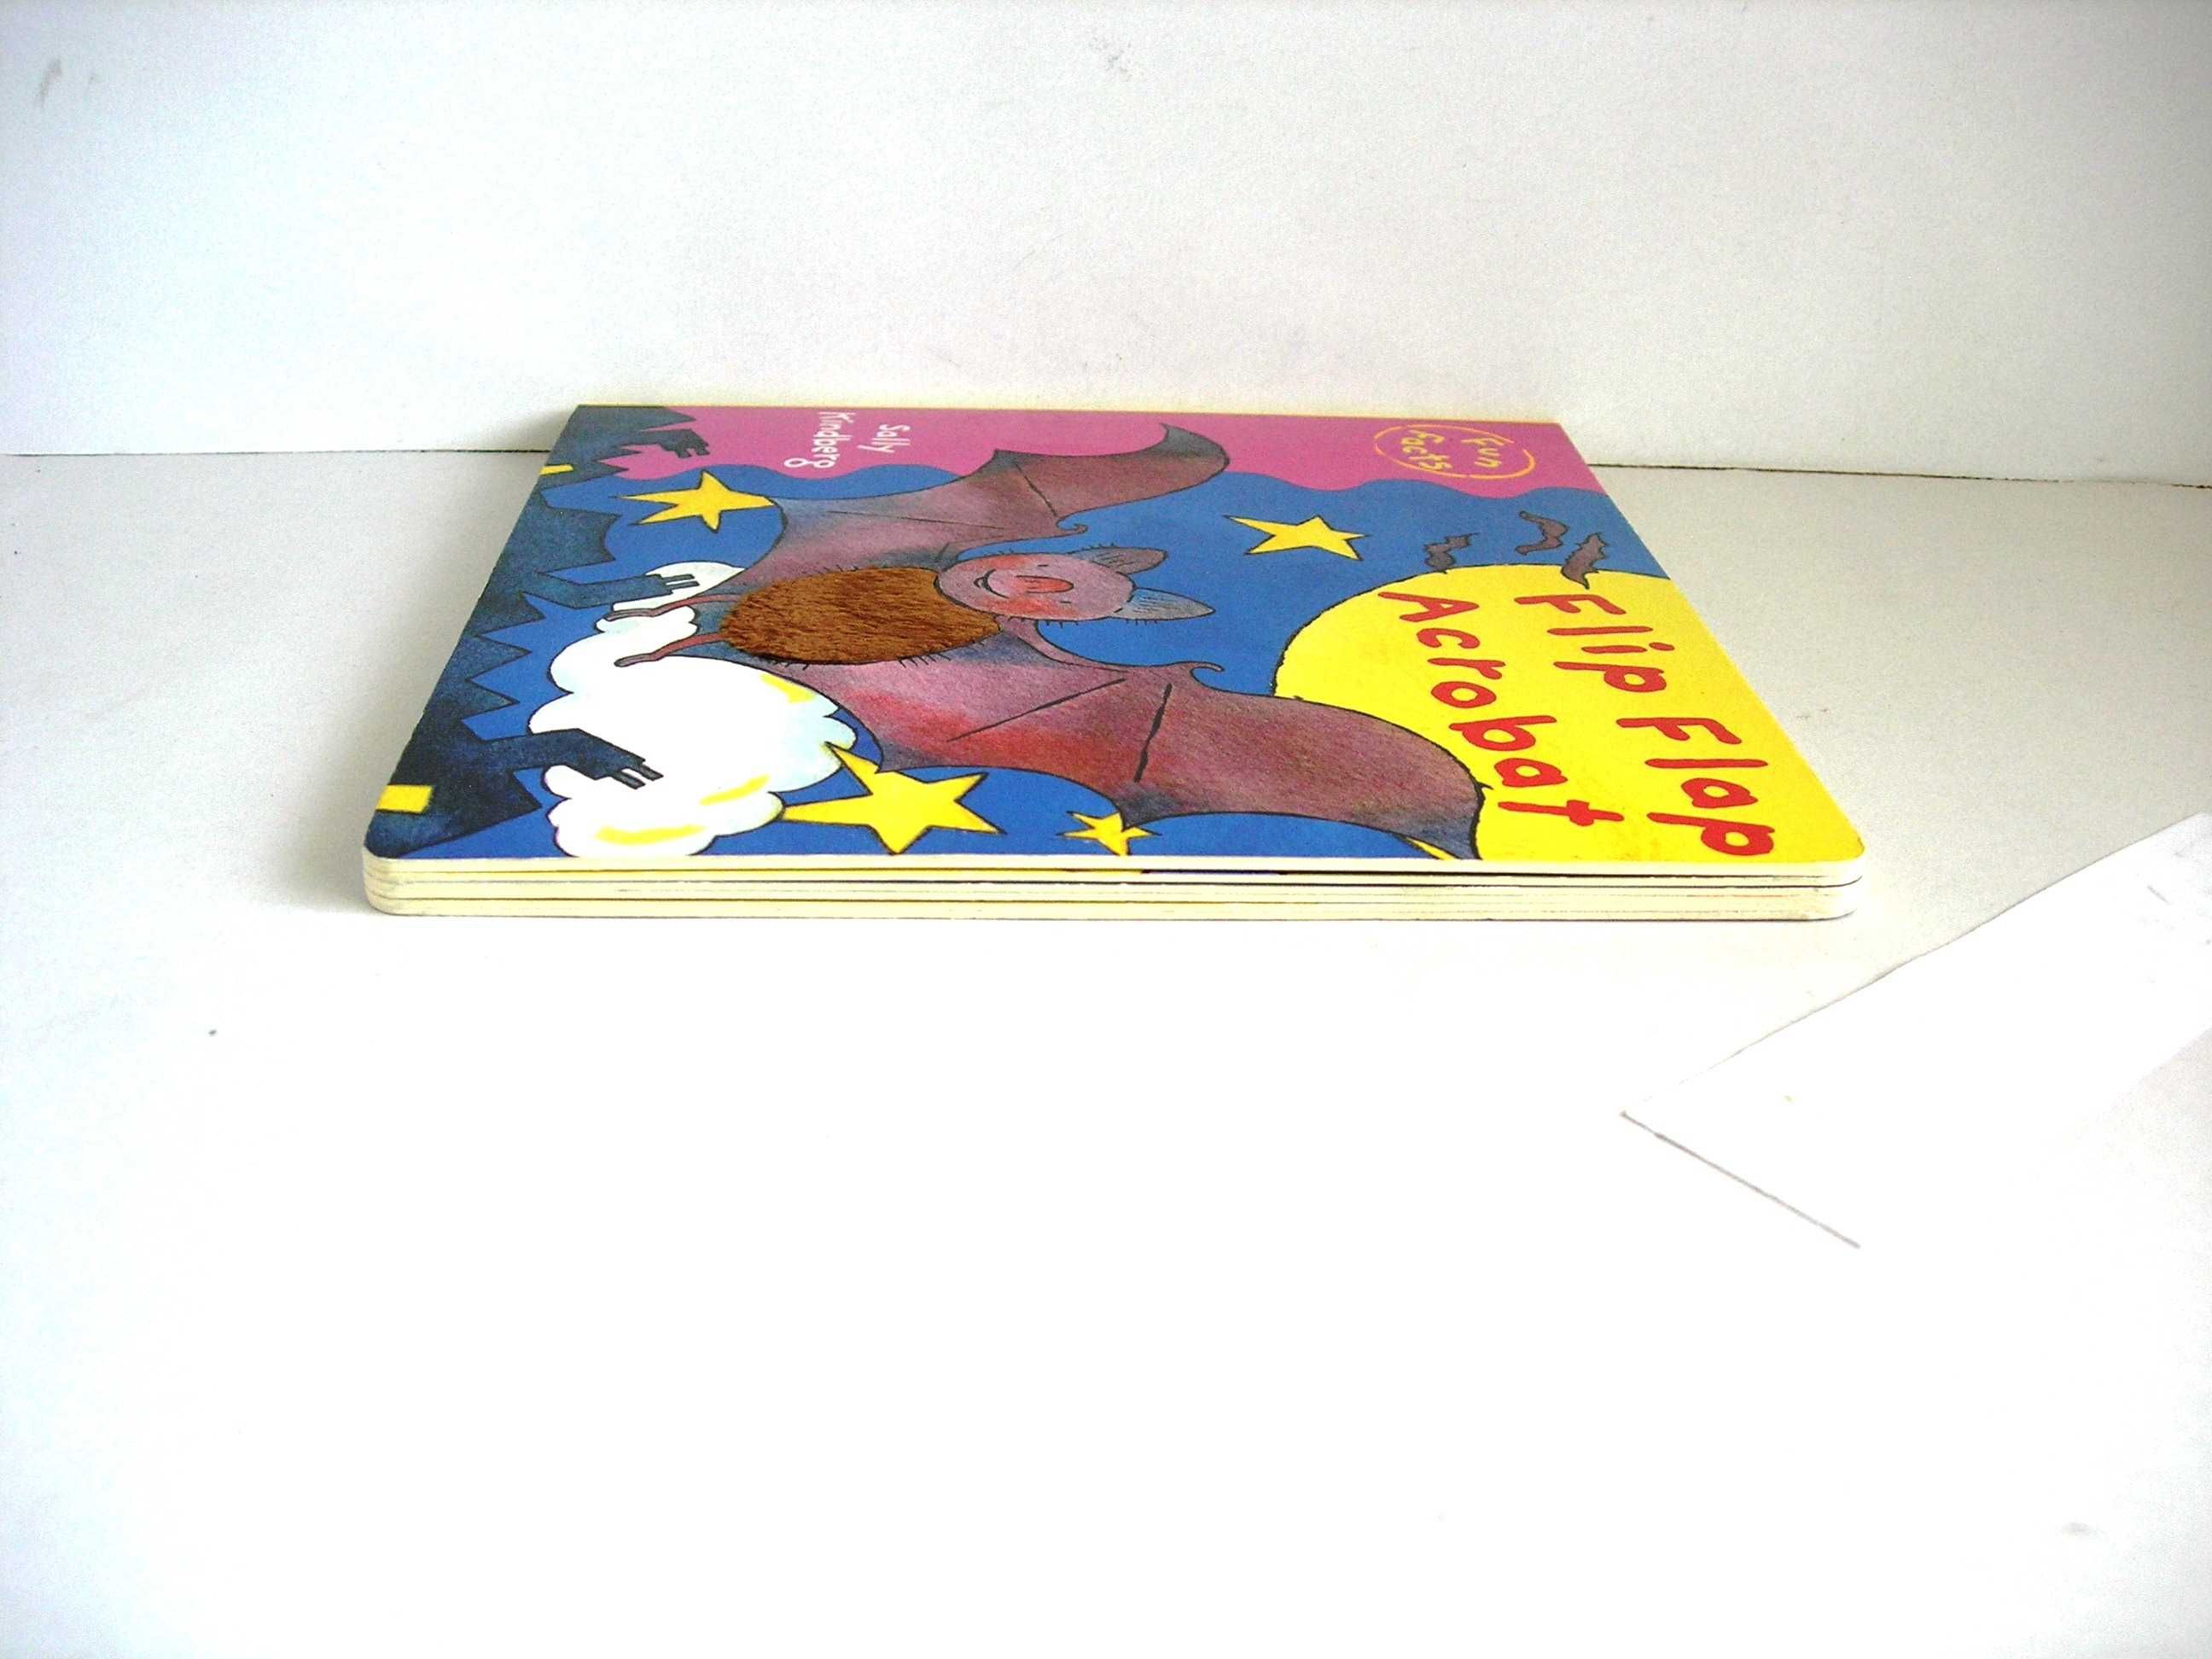 "Flip Flap Acrobat" książeczka dla dzieci po angielsku Pinwheel 2007